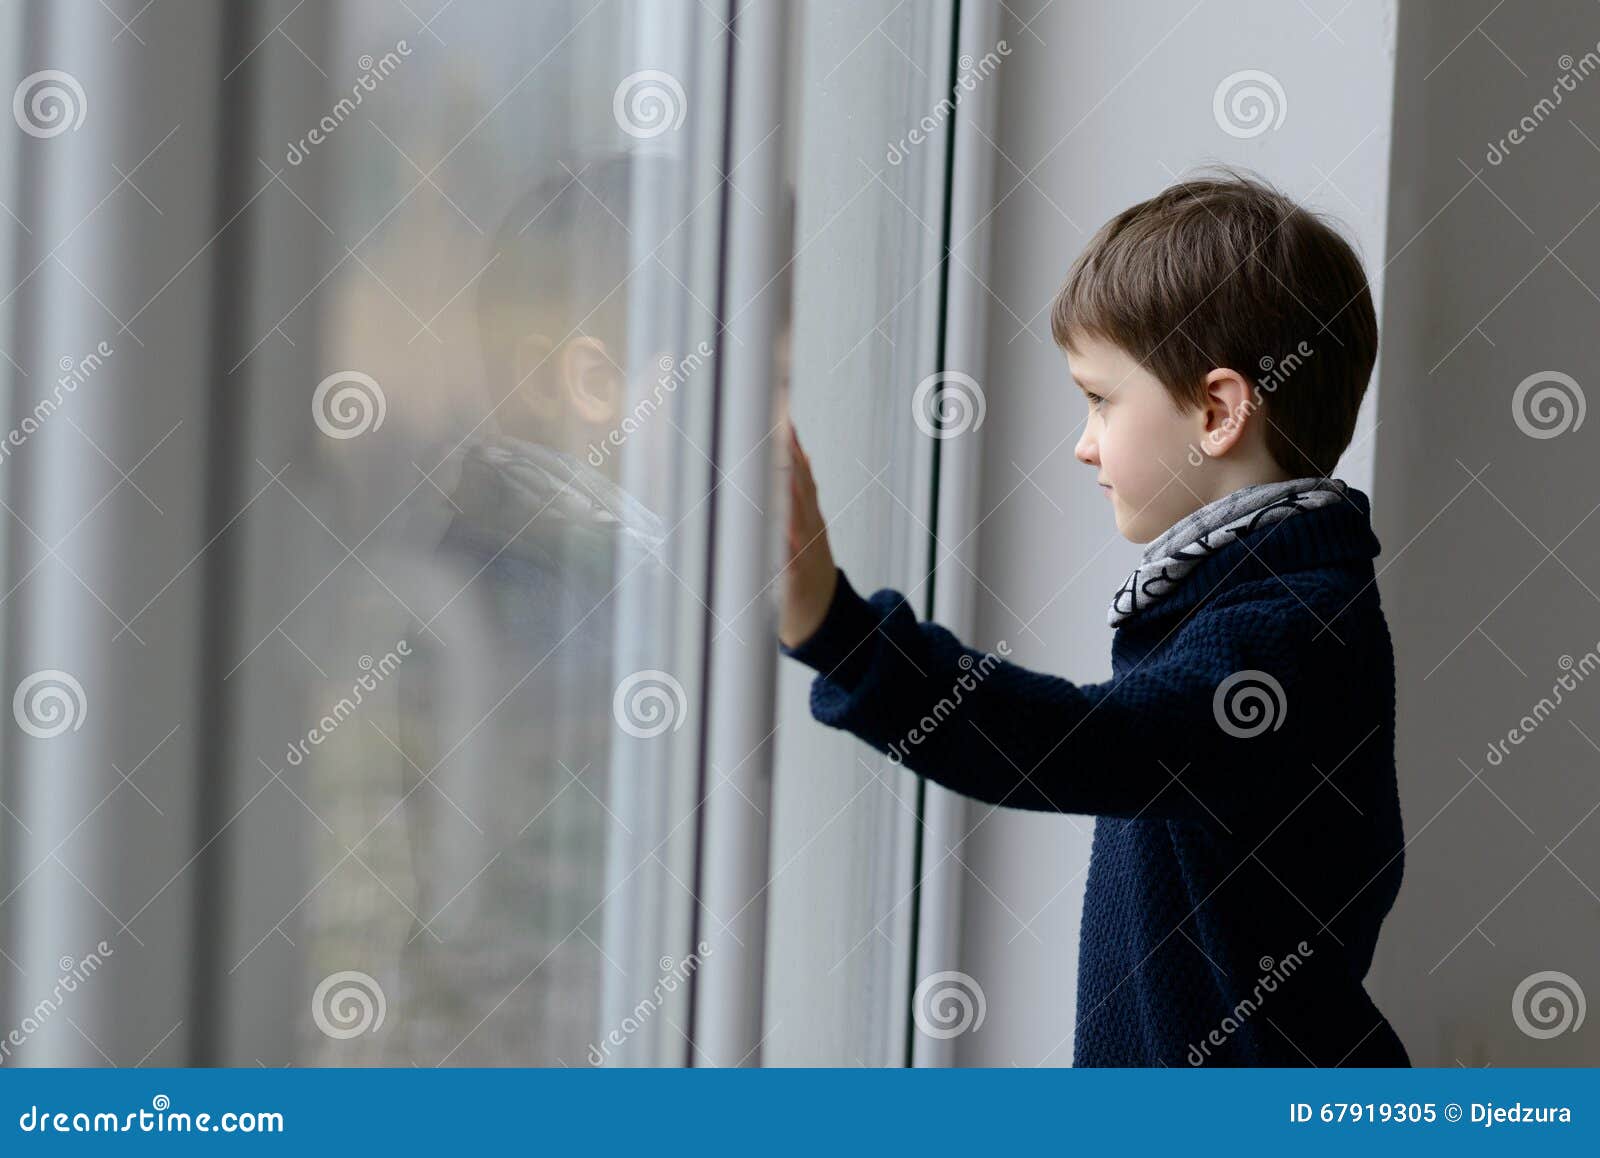 Мальчик и дверь открылась. Мальчик у окна. Подросток у окна. Мальчик возле окна. Ребенок у окна.